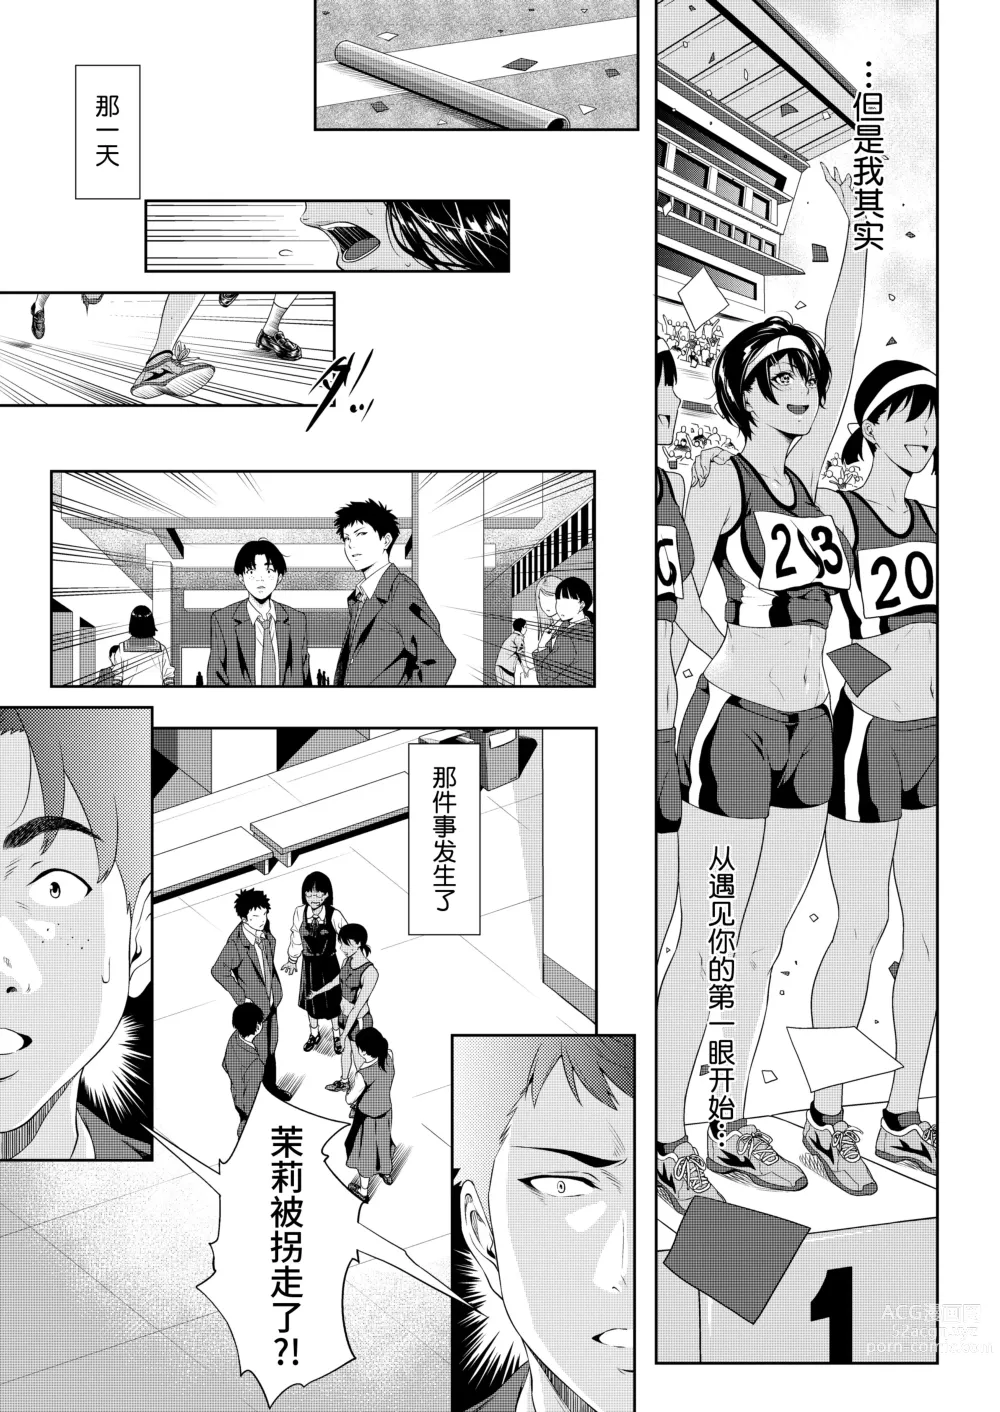 Page 7 of manga 僕たちのゴールライン